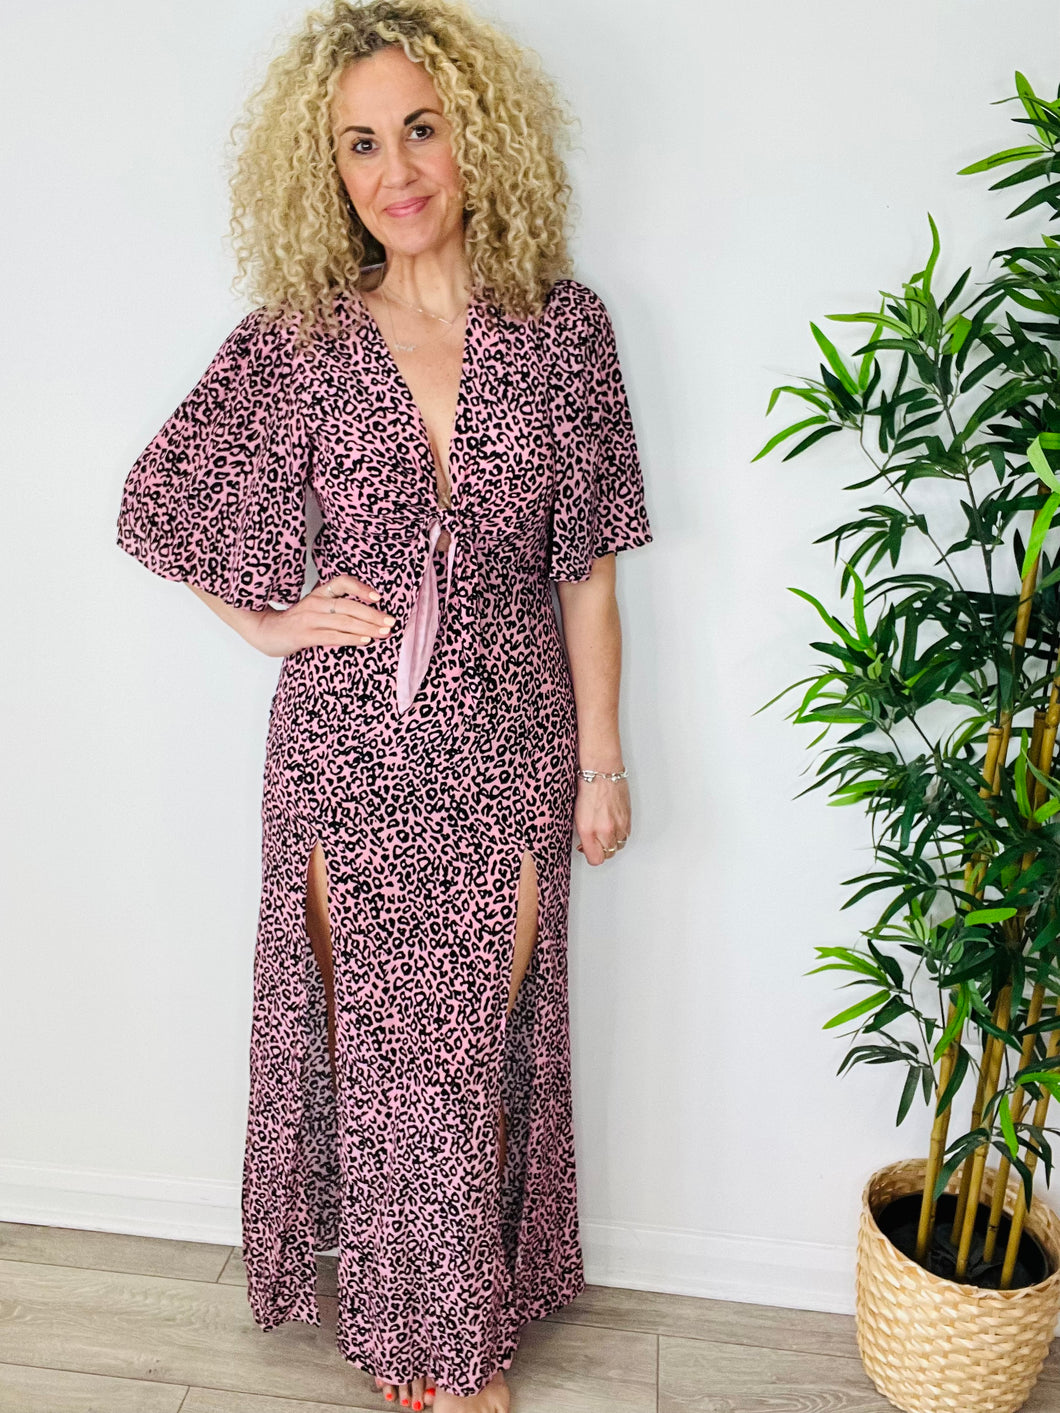 Silk Leopard Print Dress - Size 10